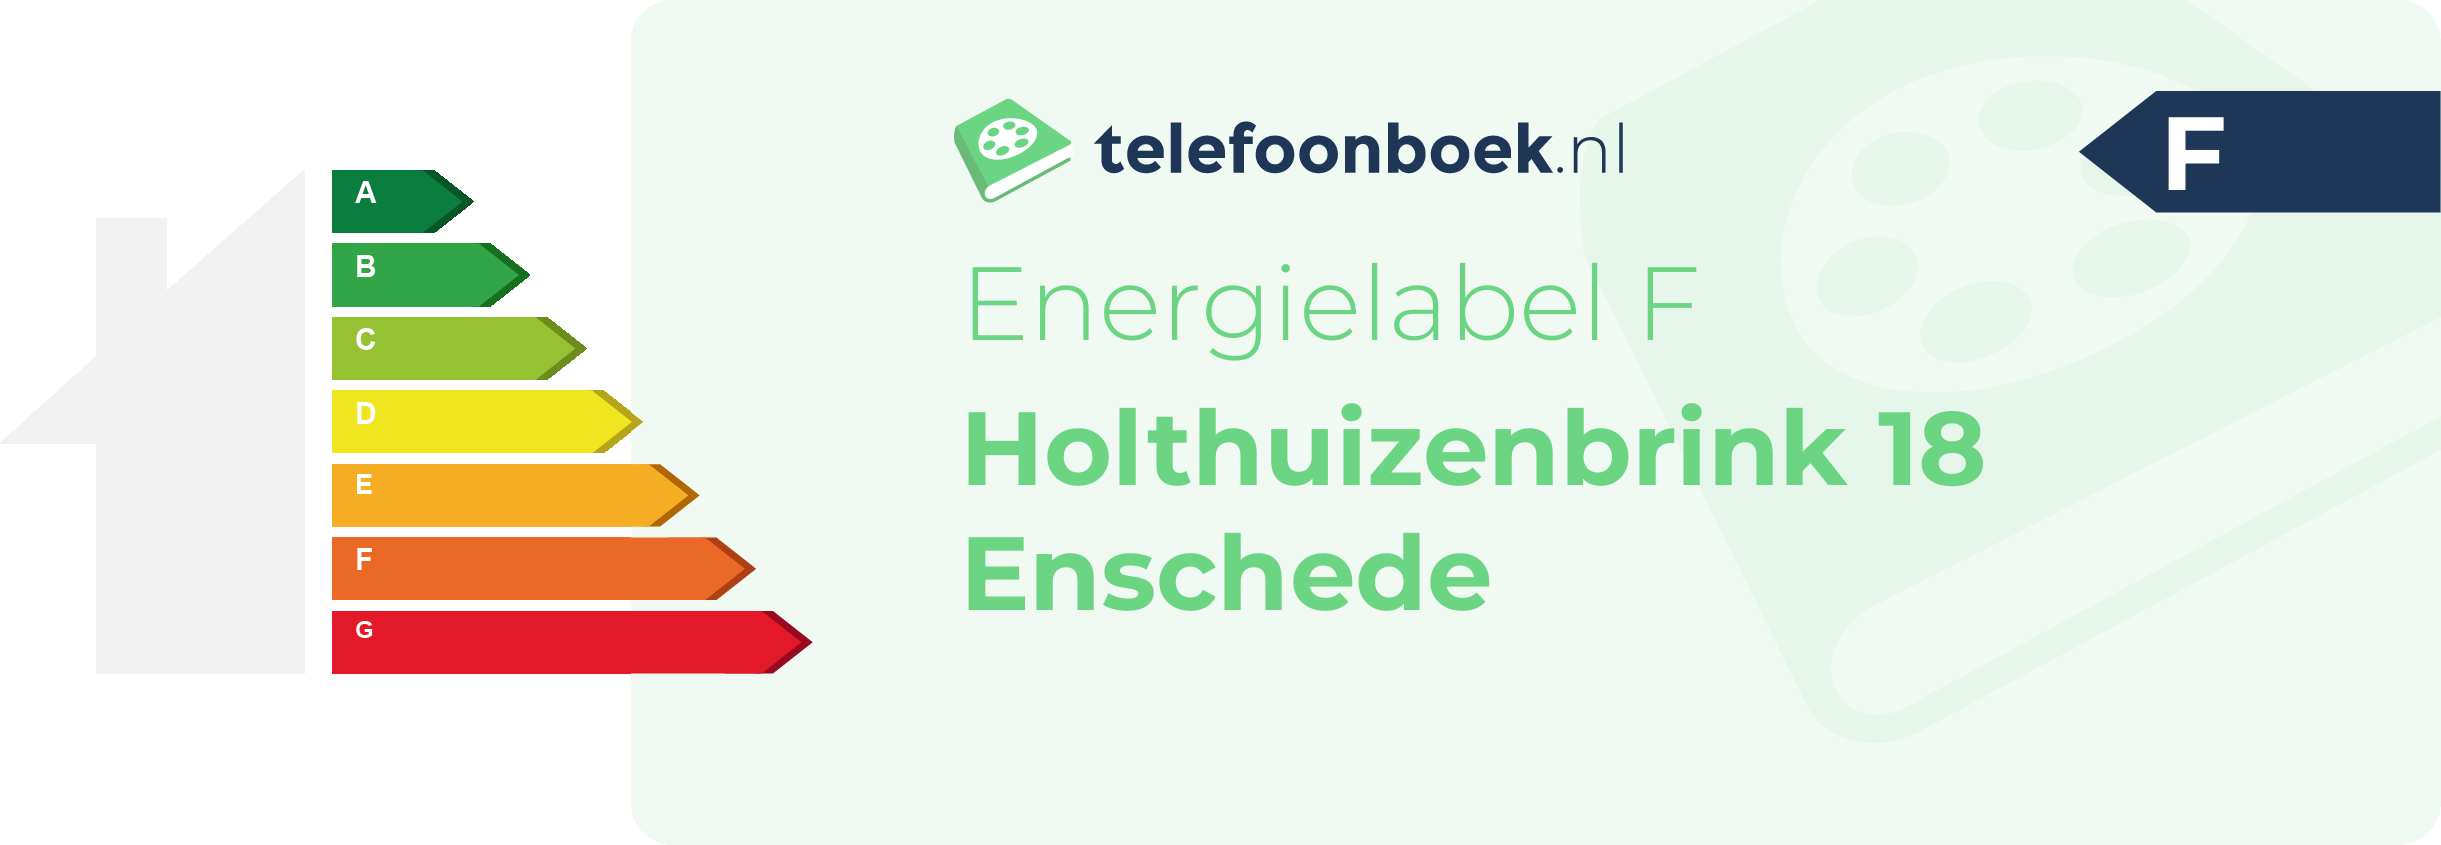 Energielabel Holthuizenbrink 18 Enschede